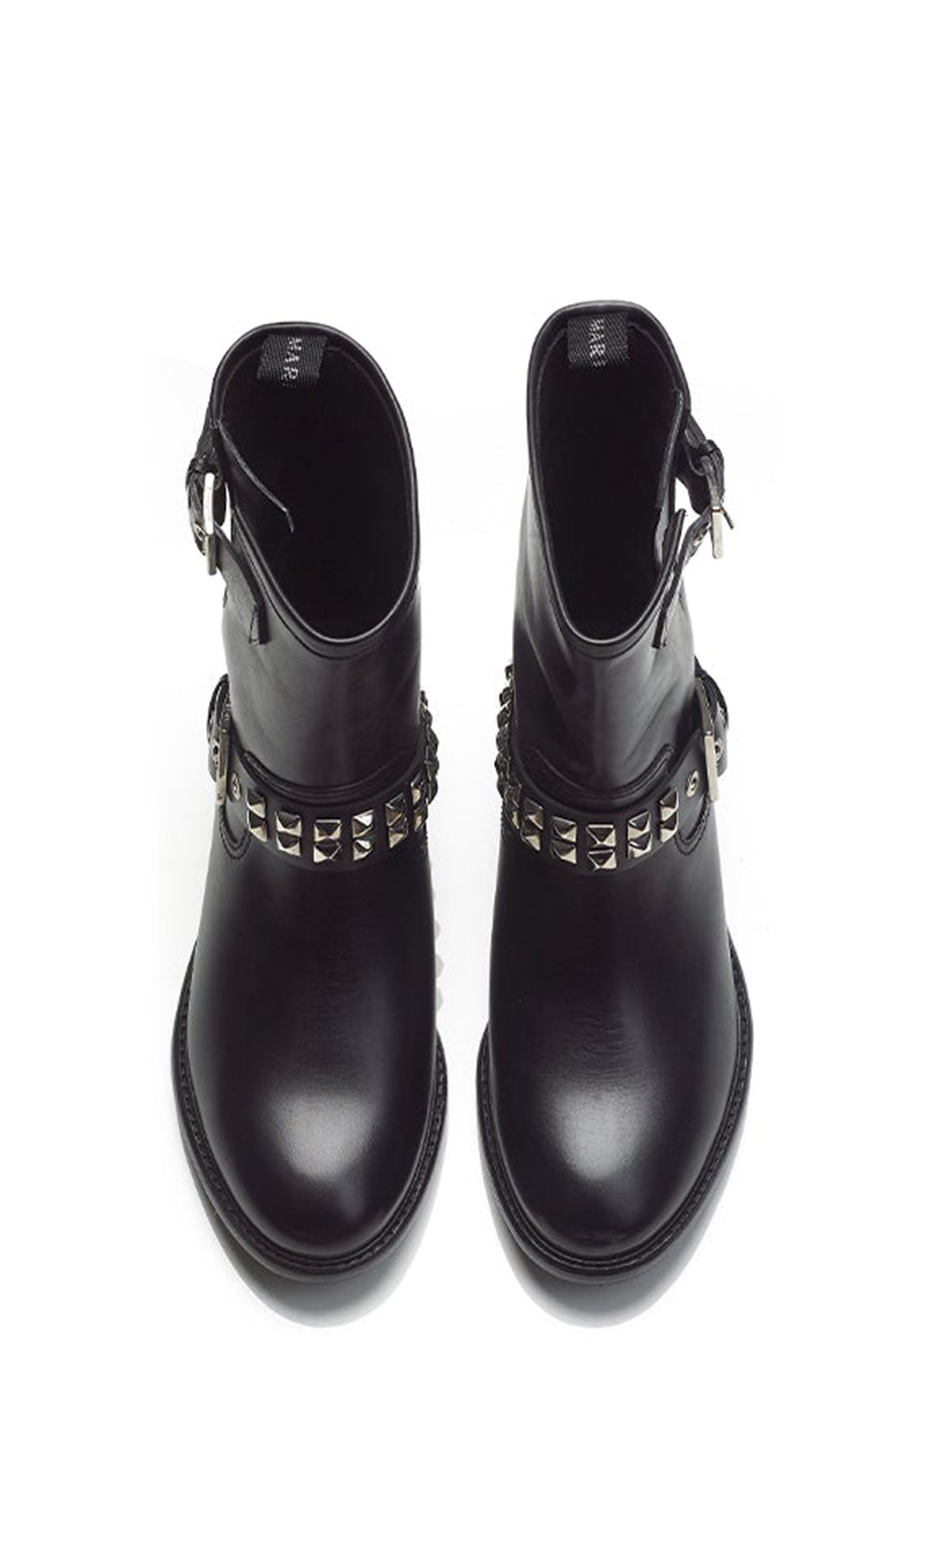 black jodhpur boots